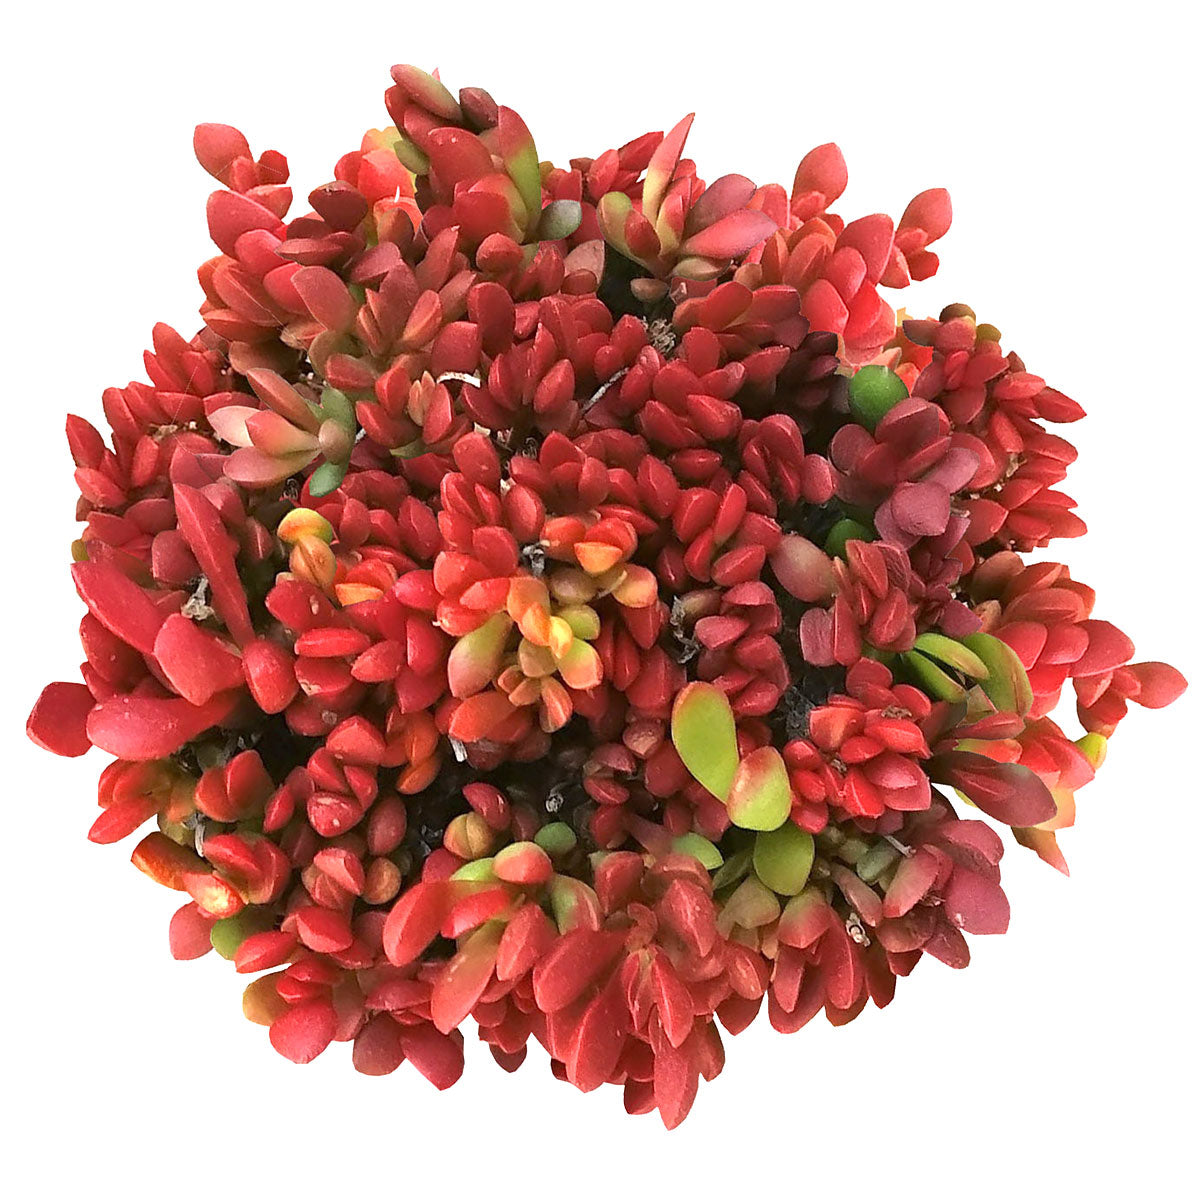 Red Carpet Sedum Crassula Scens Subsp Radicans For Succulents Box